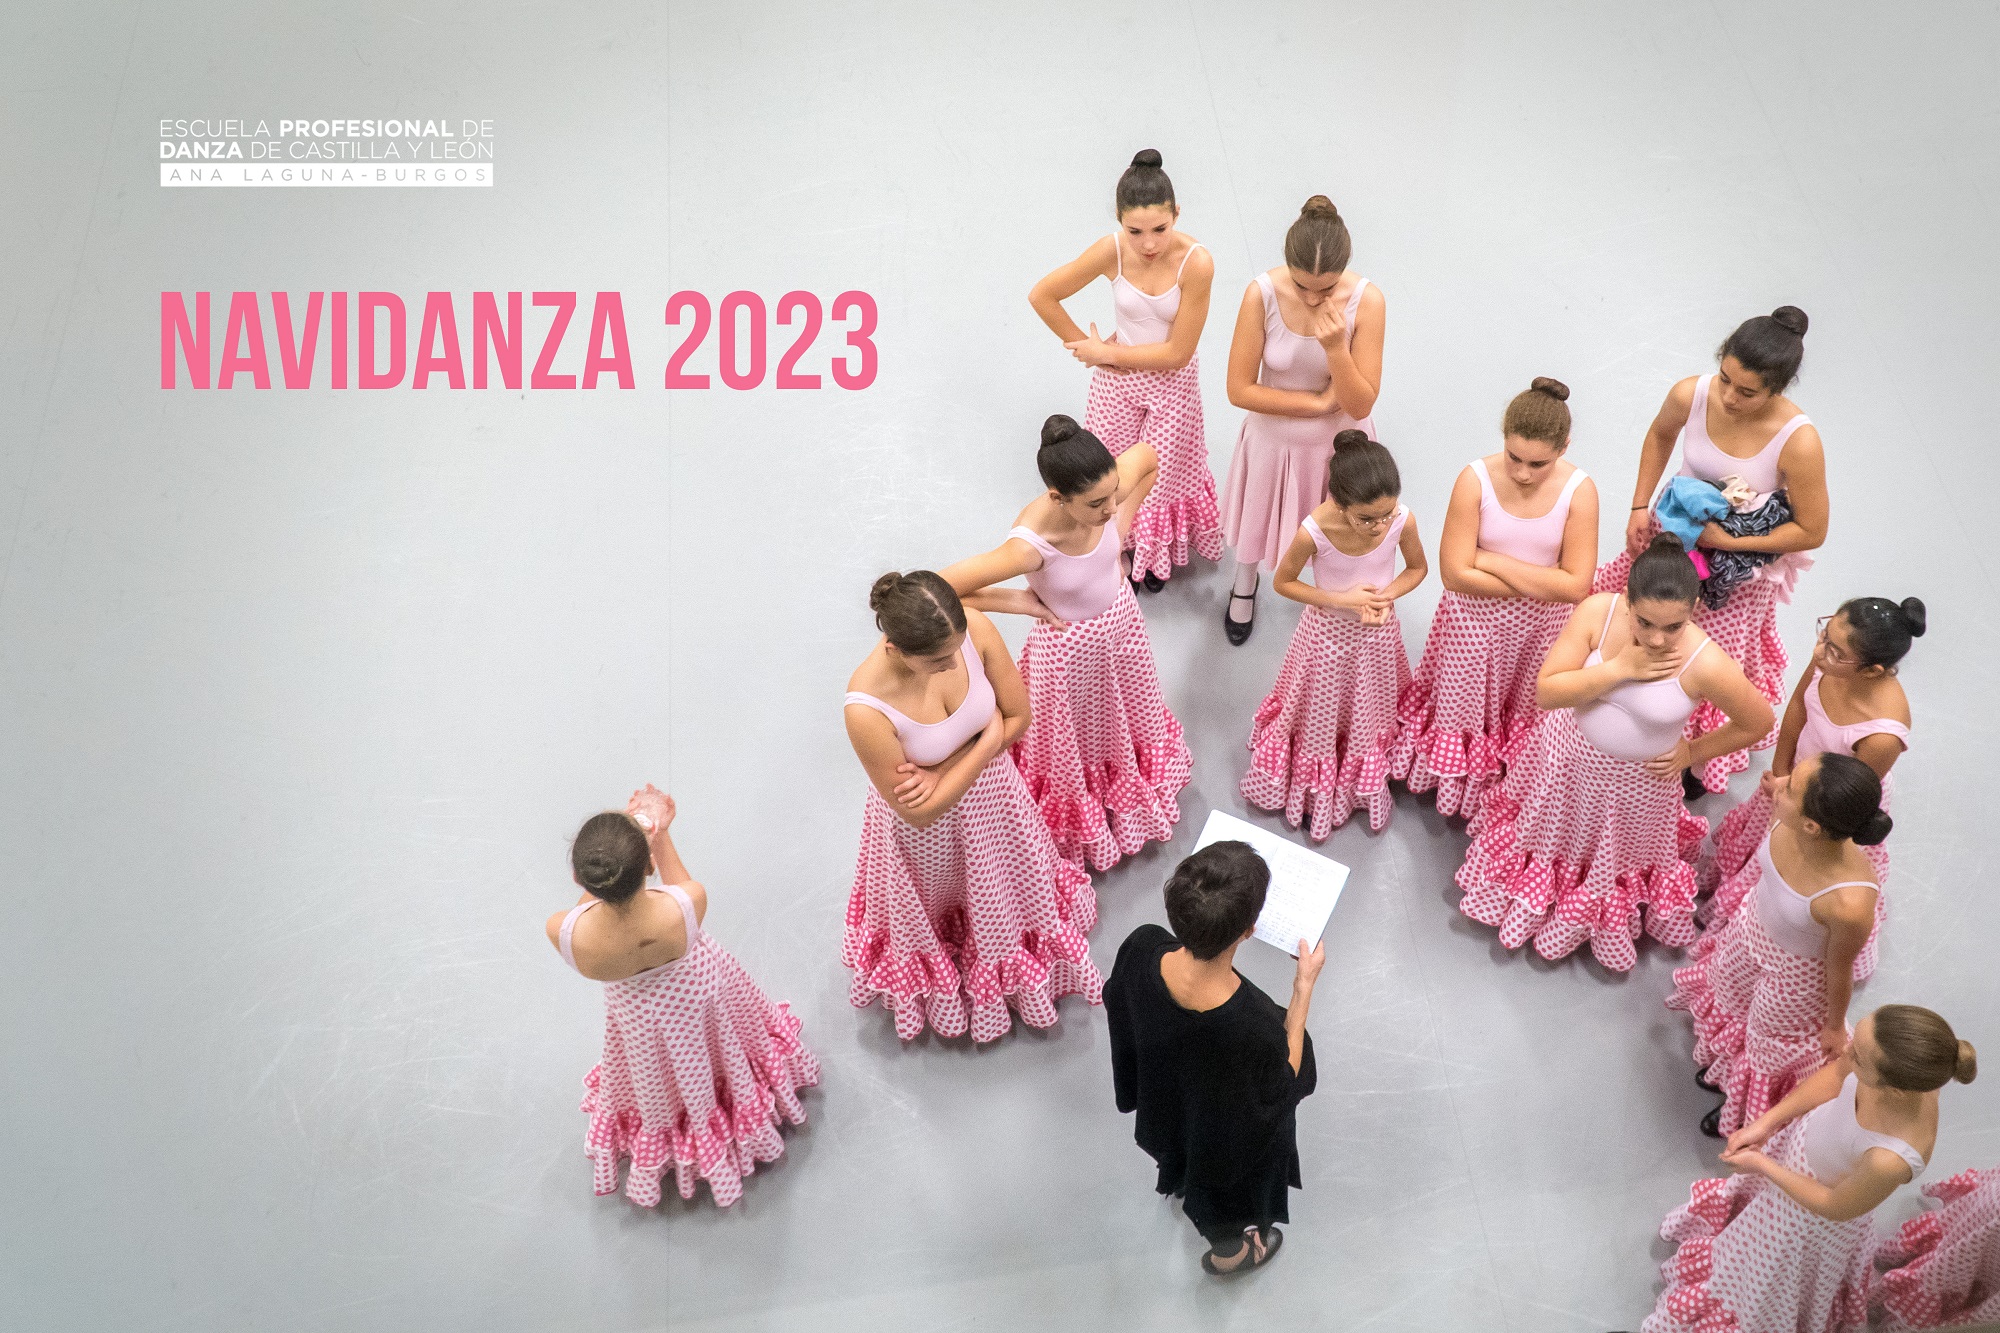 Navidanza 2023